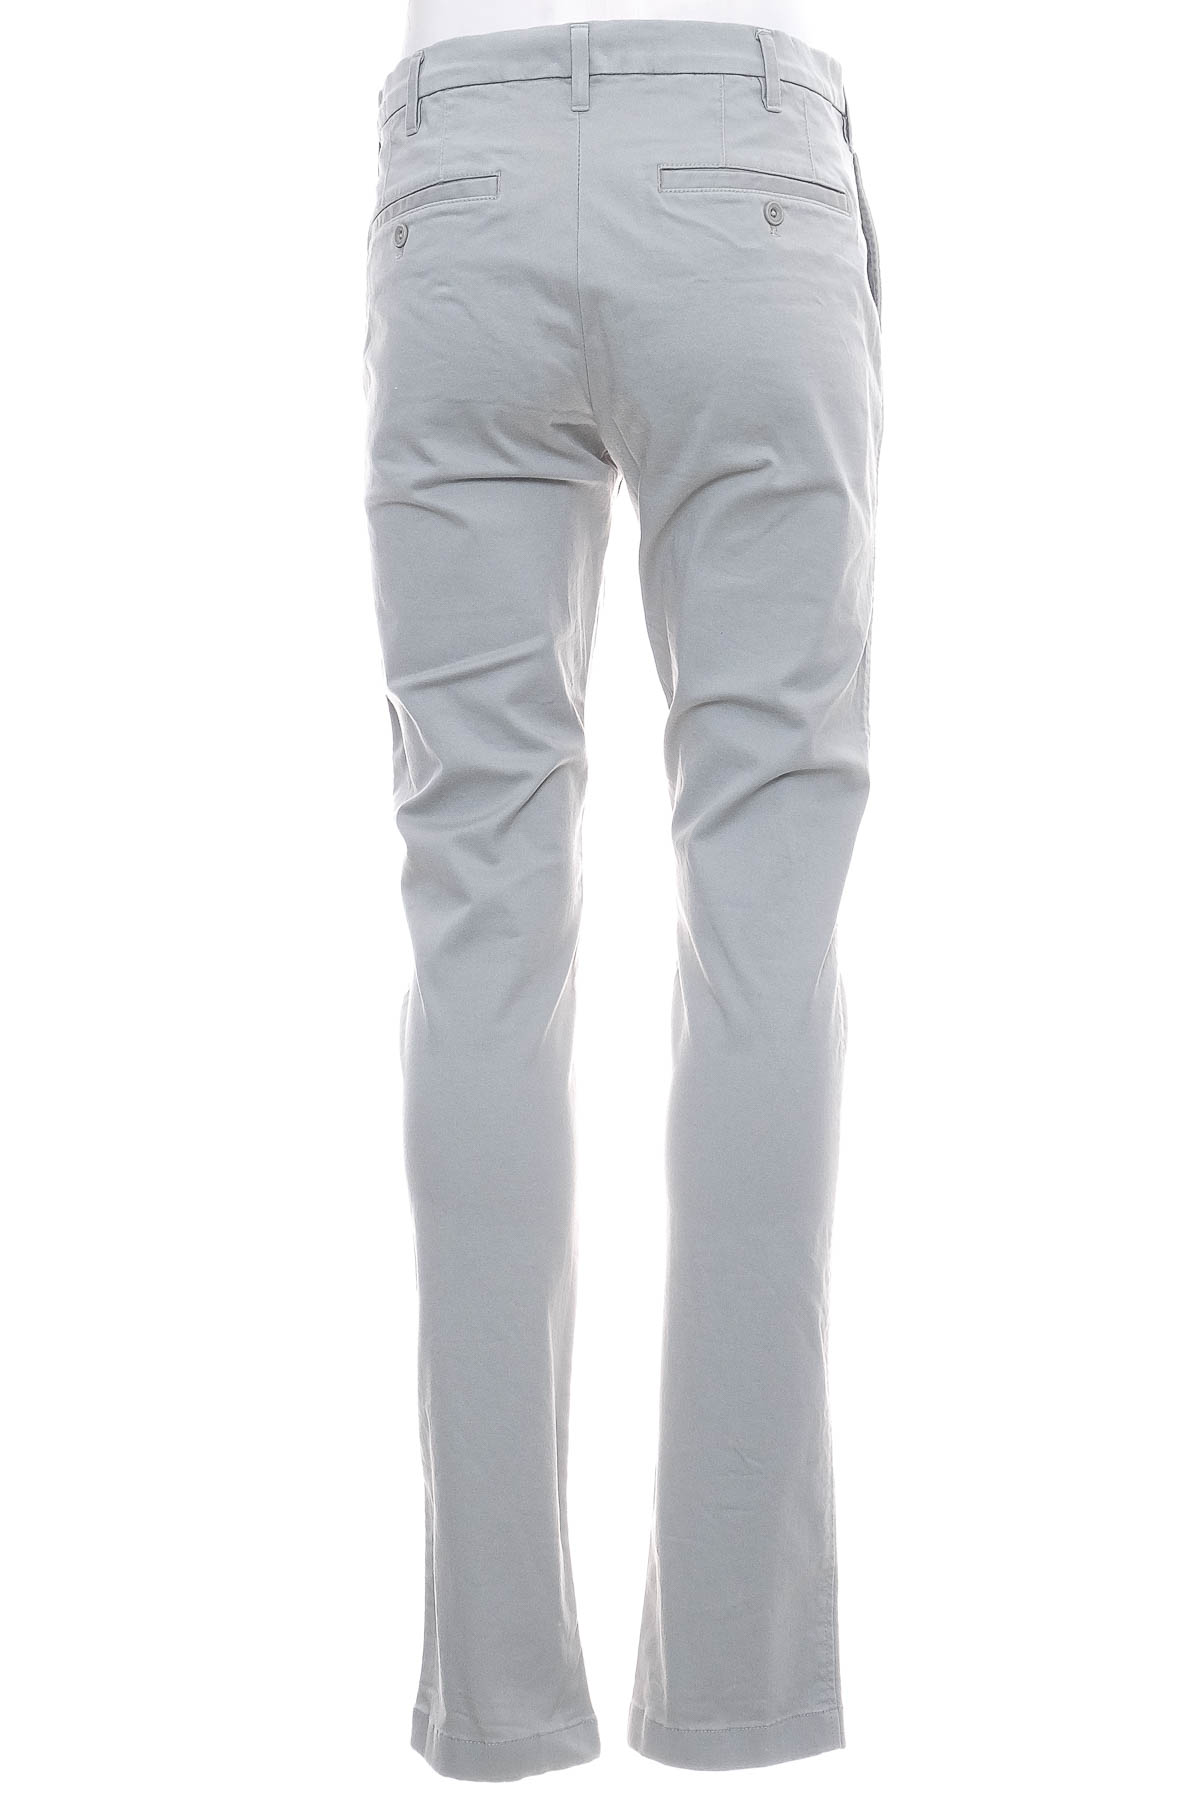 Men's trousers - UNIQLO - 1